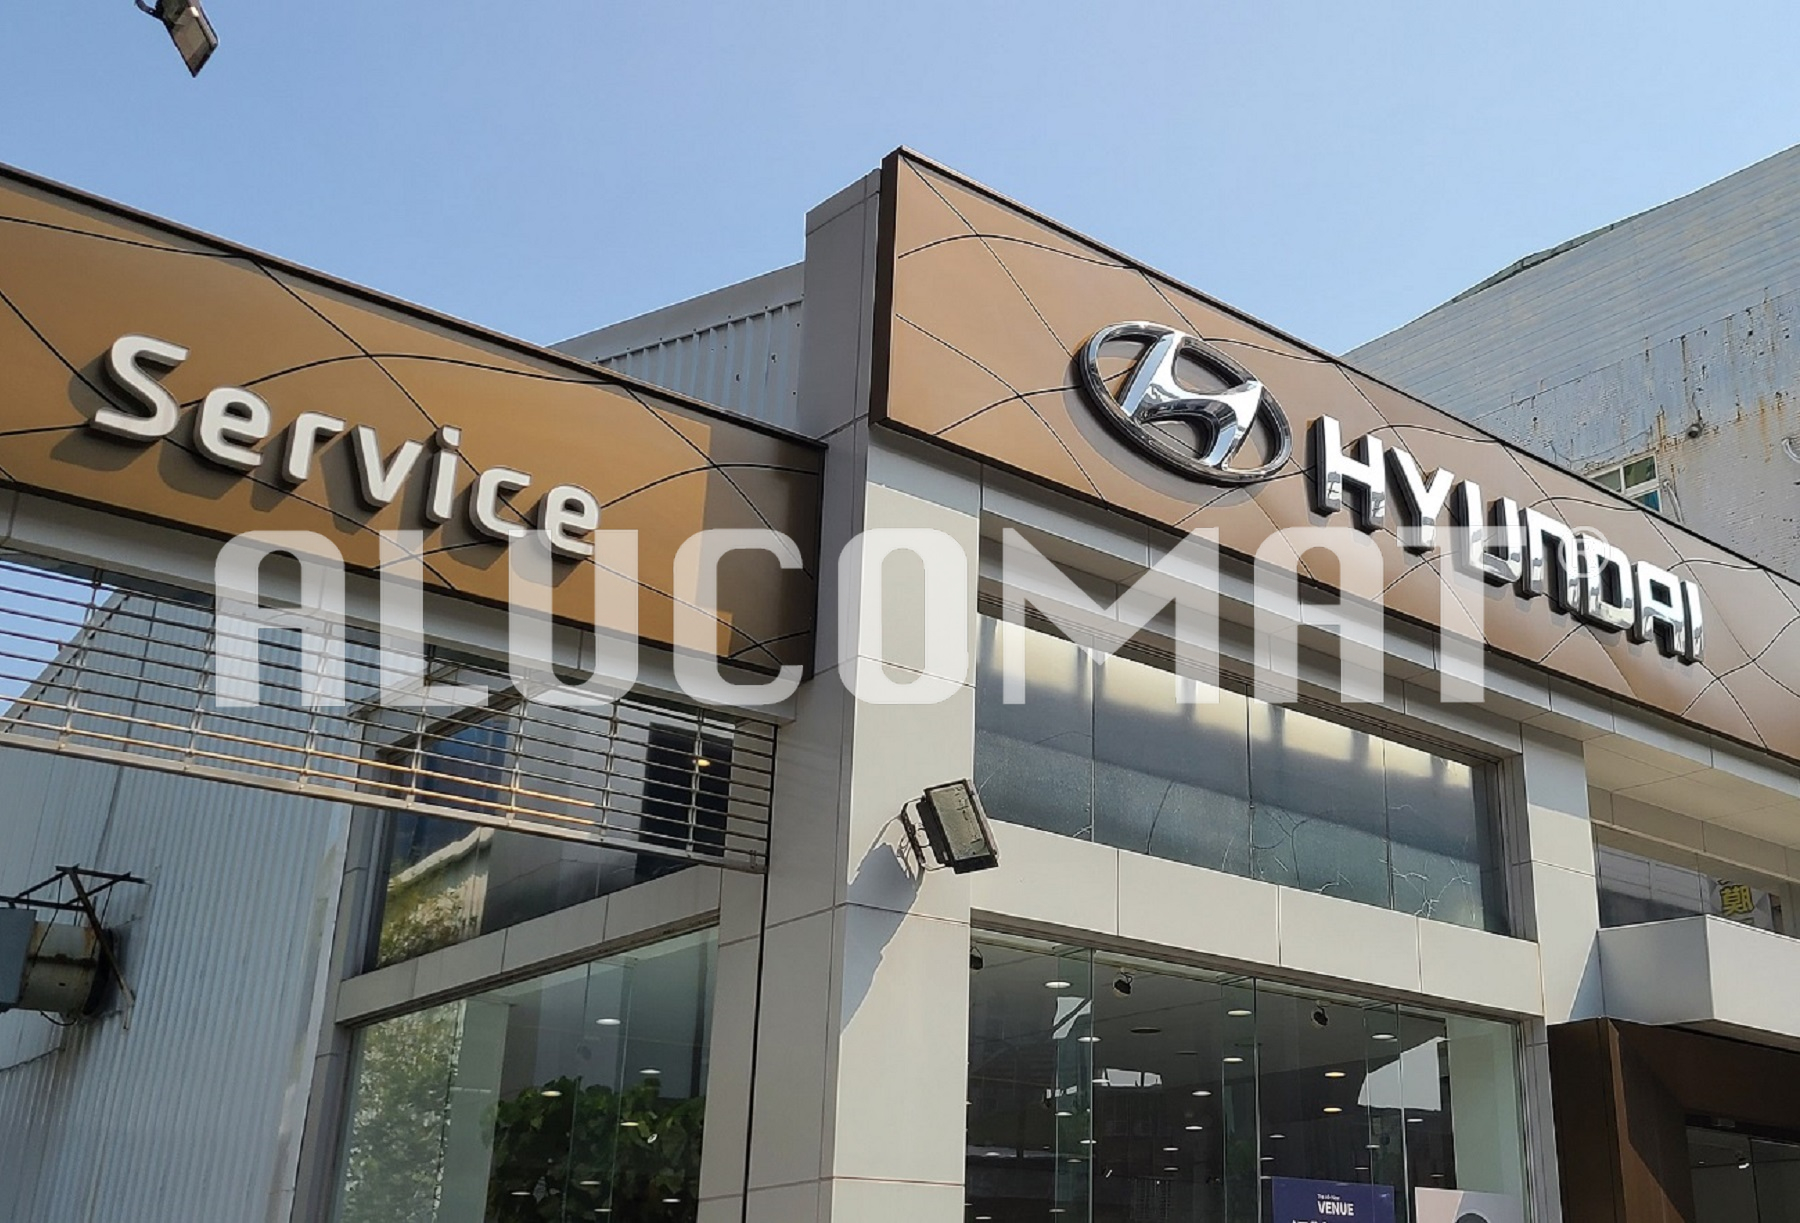 Hyundai Showroom